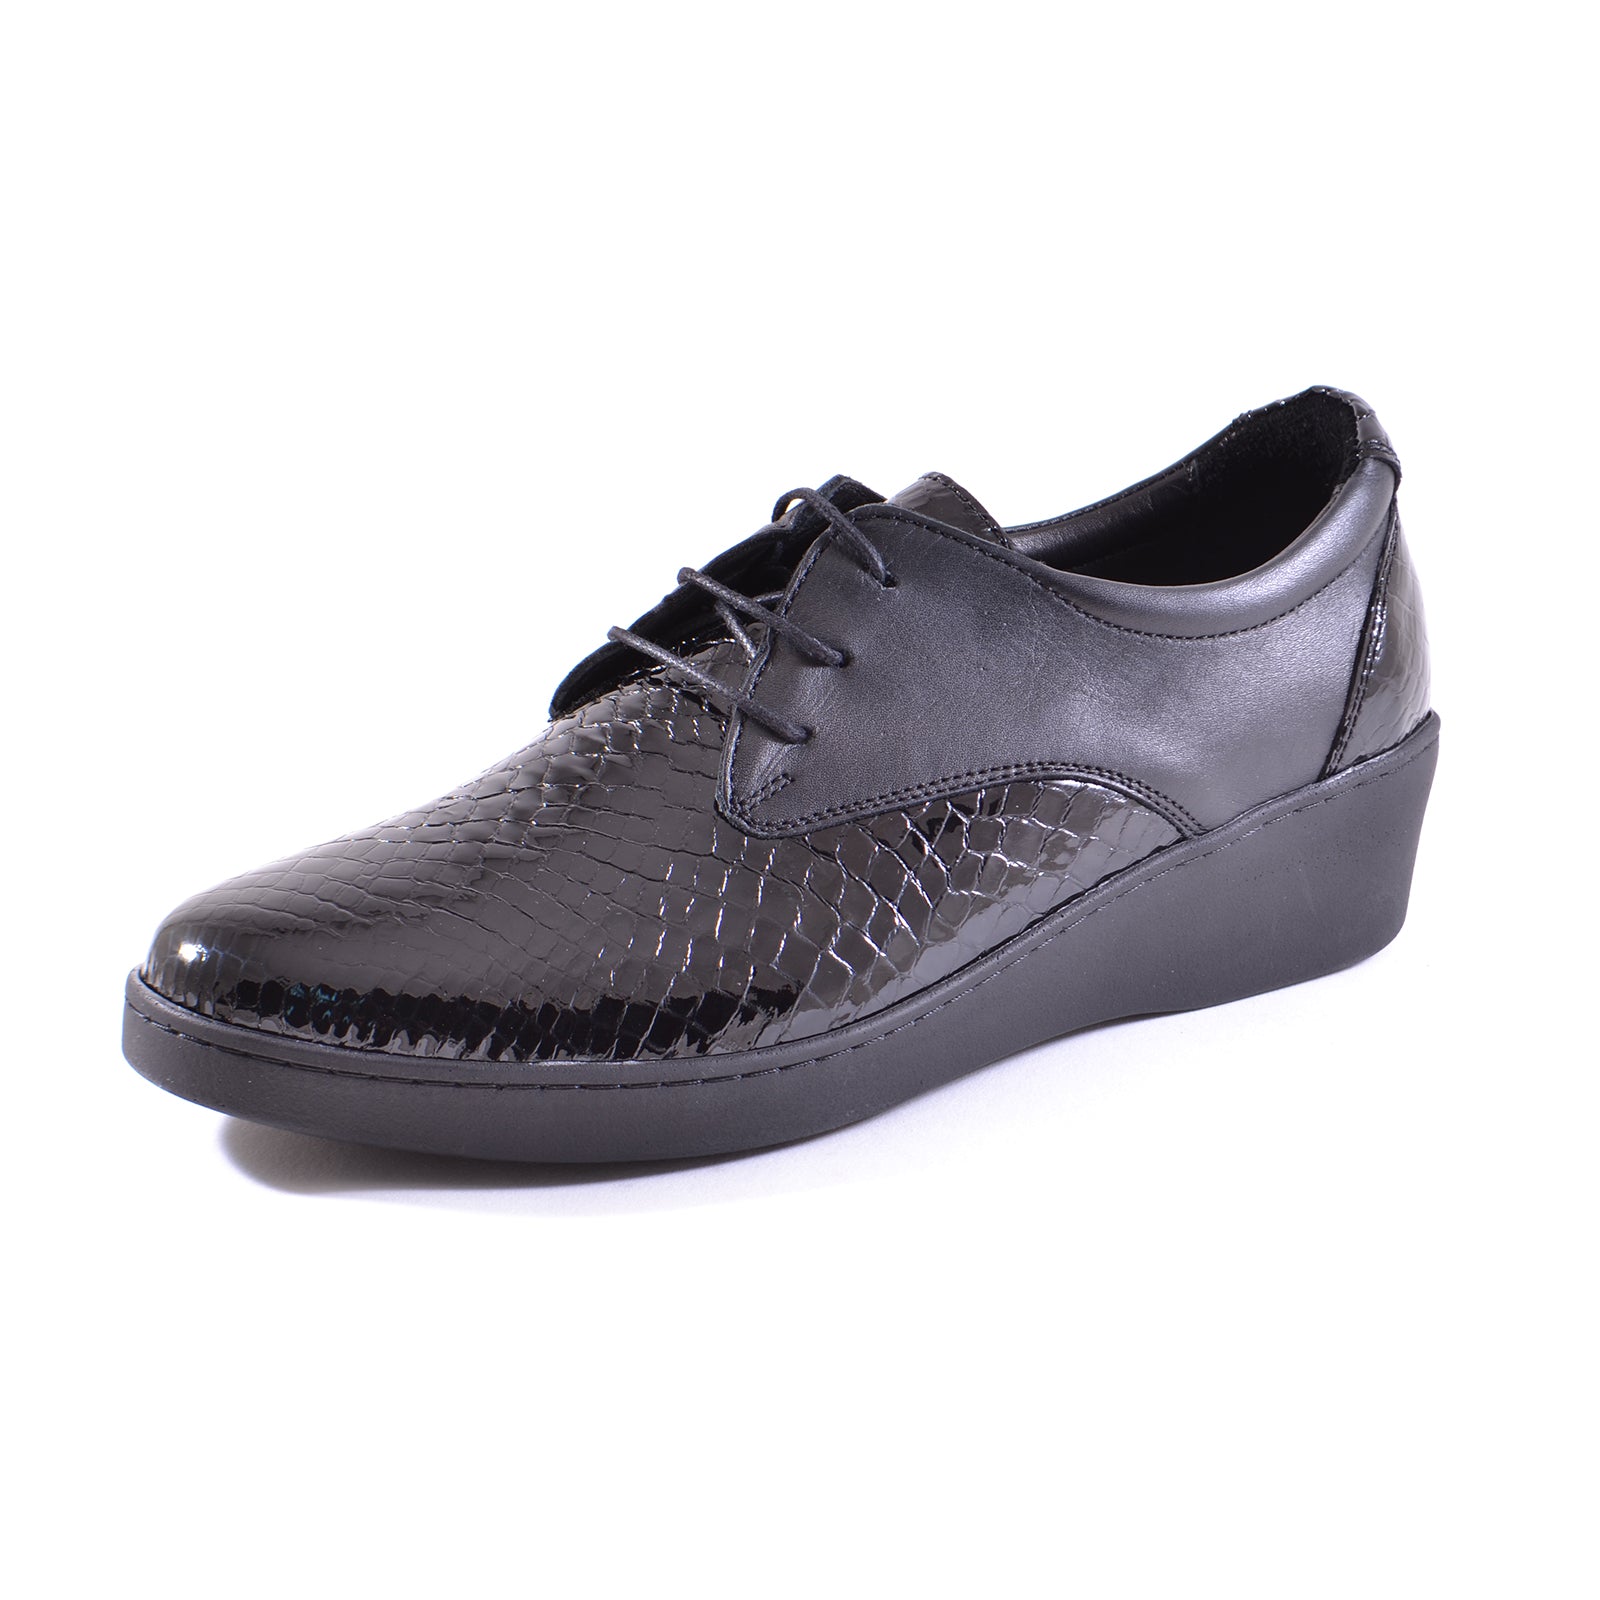 Pantofi Caspian 2305 Black Croco Lac